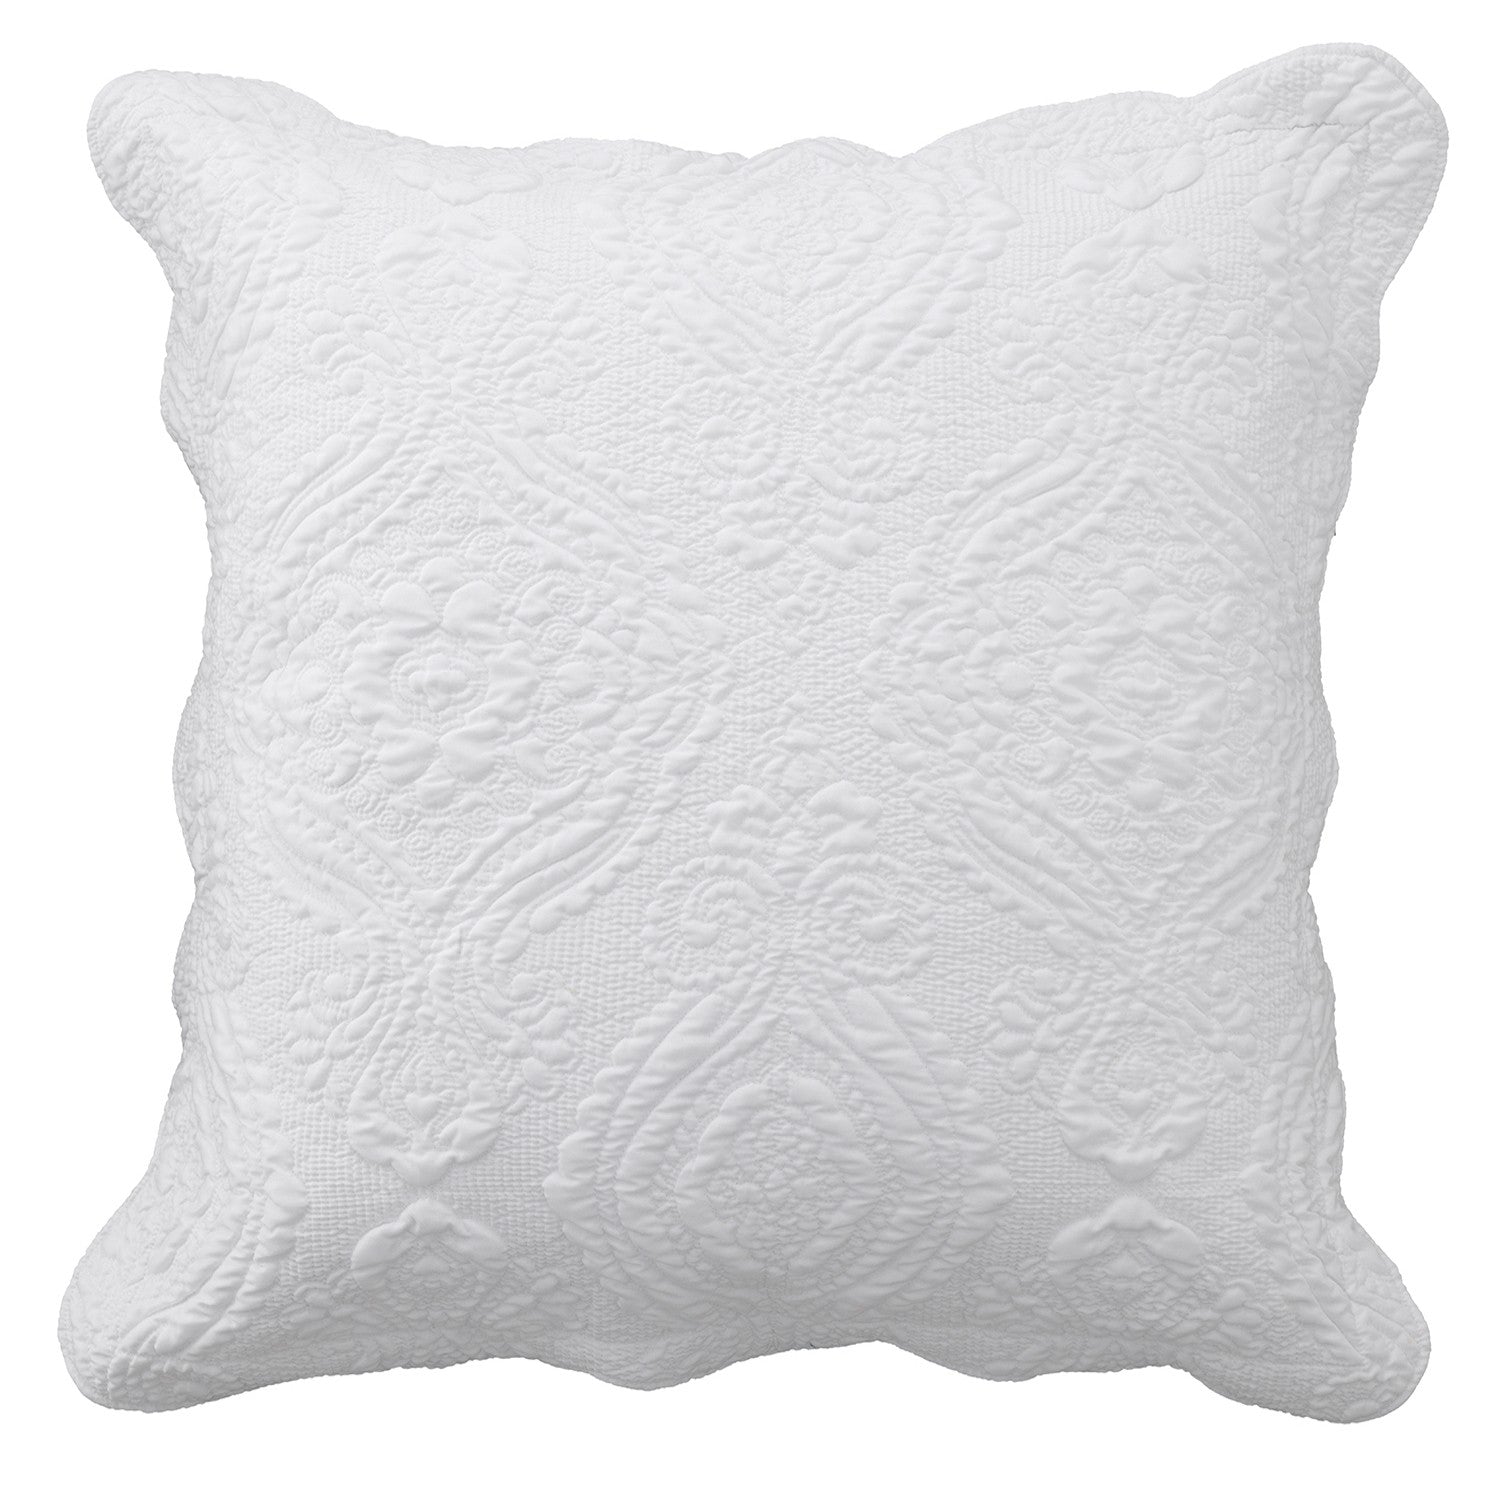 Cordelia European Pillowcase